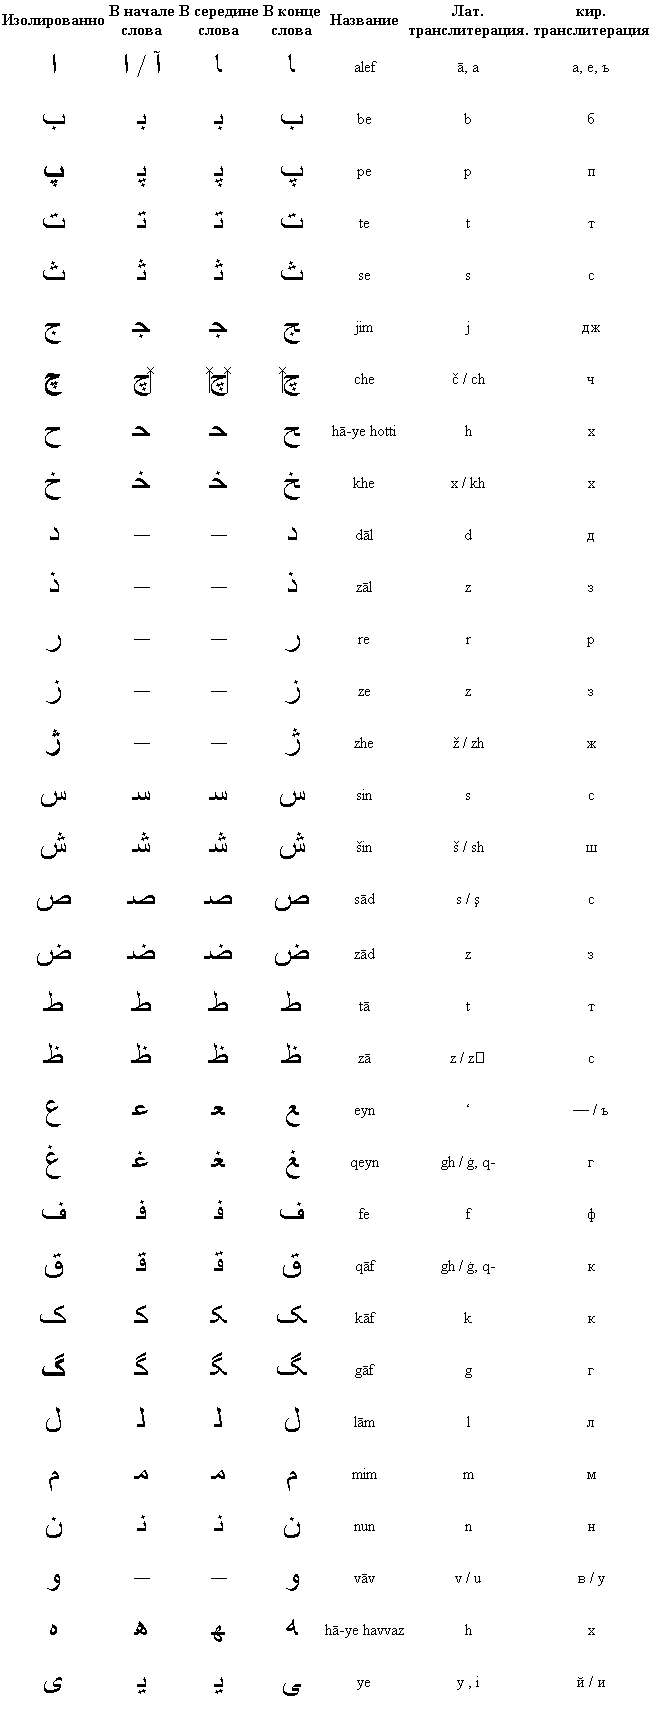 Таджикская транскрипция. Персидский алфавит фарси. Алфавит фарси с транскрипцией. Персидский алфавит и арабский алфавит. Персидский алфавит с русской транскрипцией.